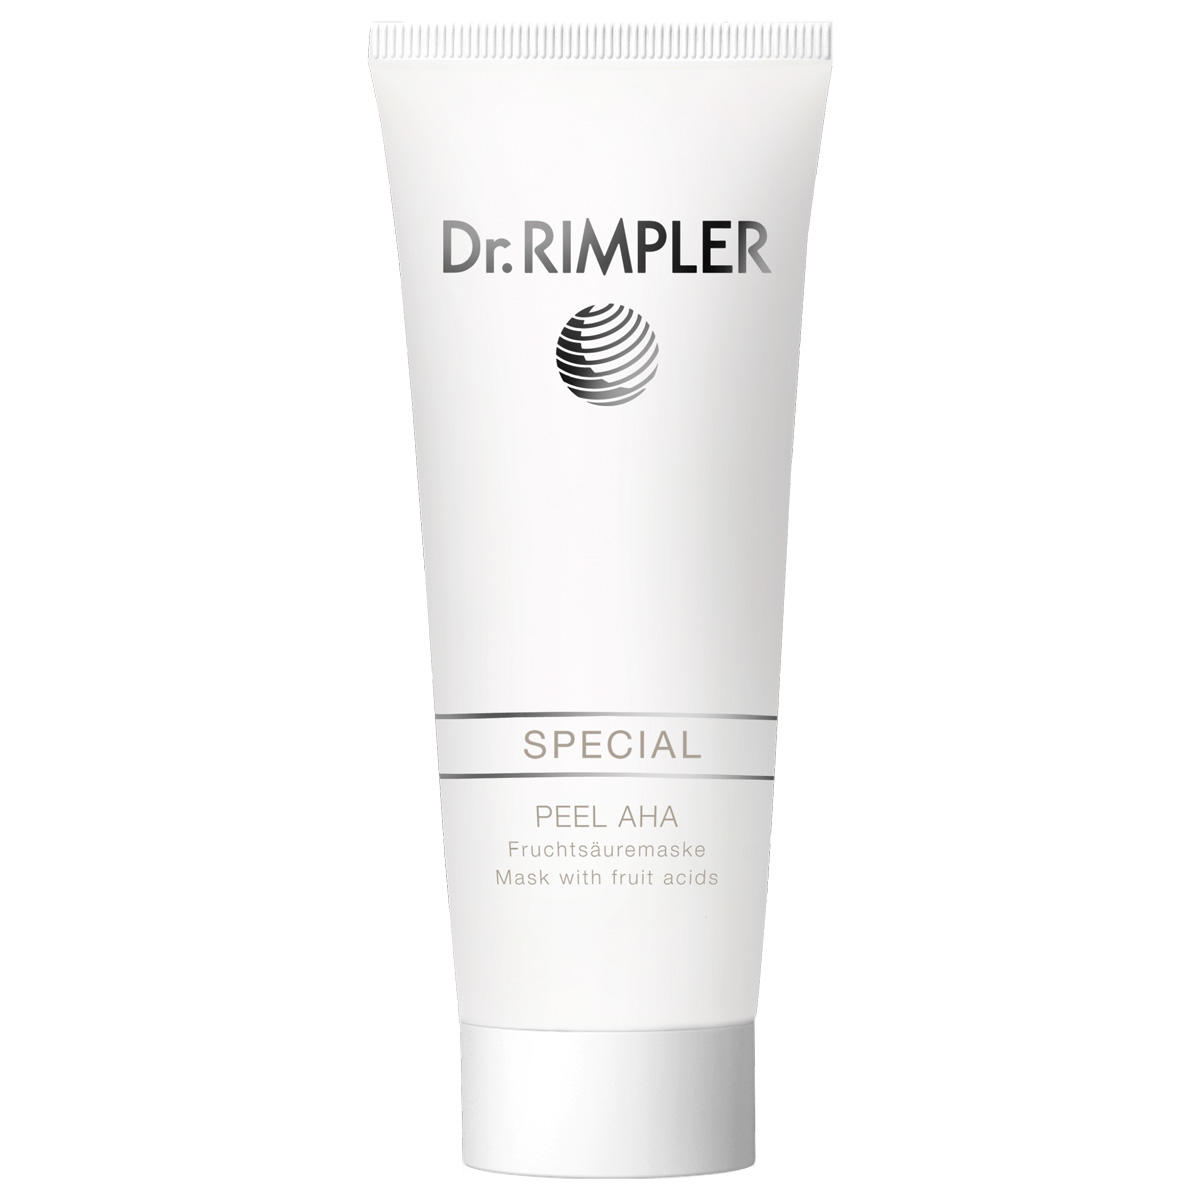 Dr. RIMPLER SPECIAL Masque aux acides de fruits Peel AHA 75 ml - 1